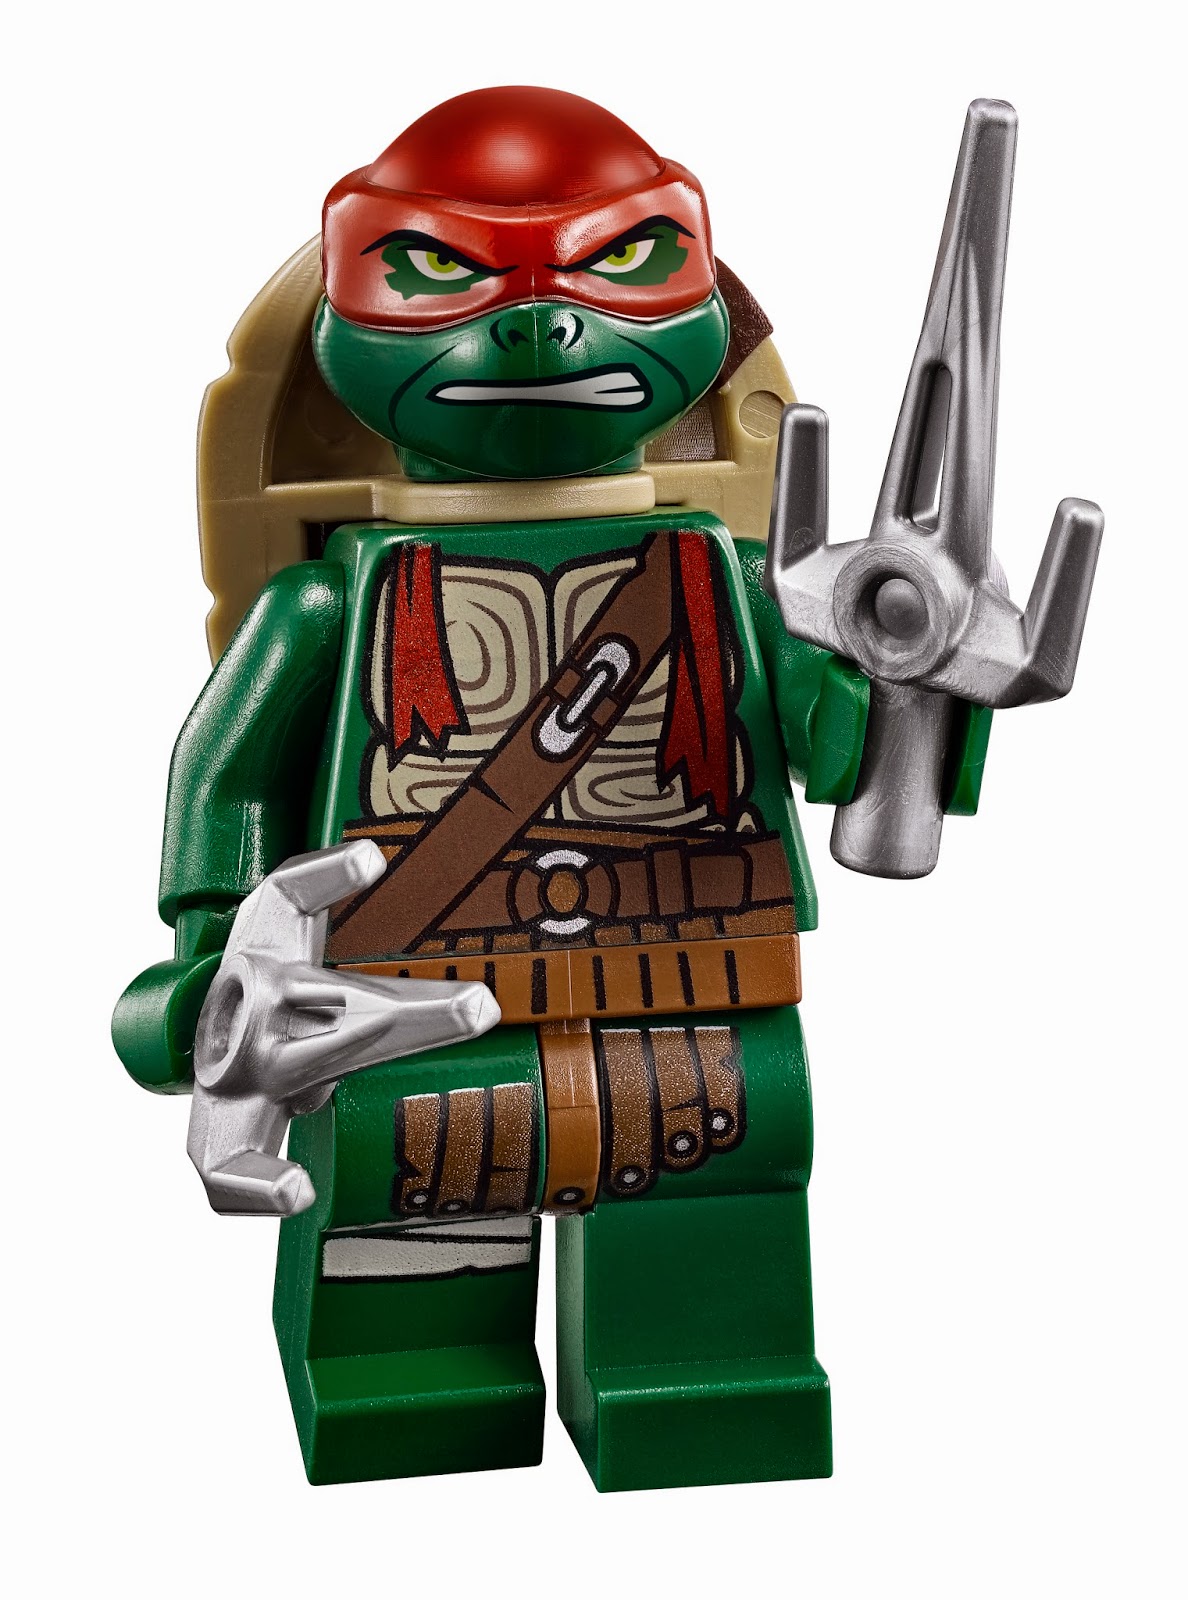 NickALive LEGO Releases New quotTeenage Mutant Ninja